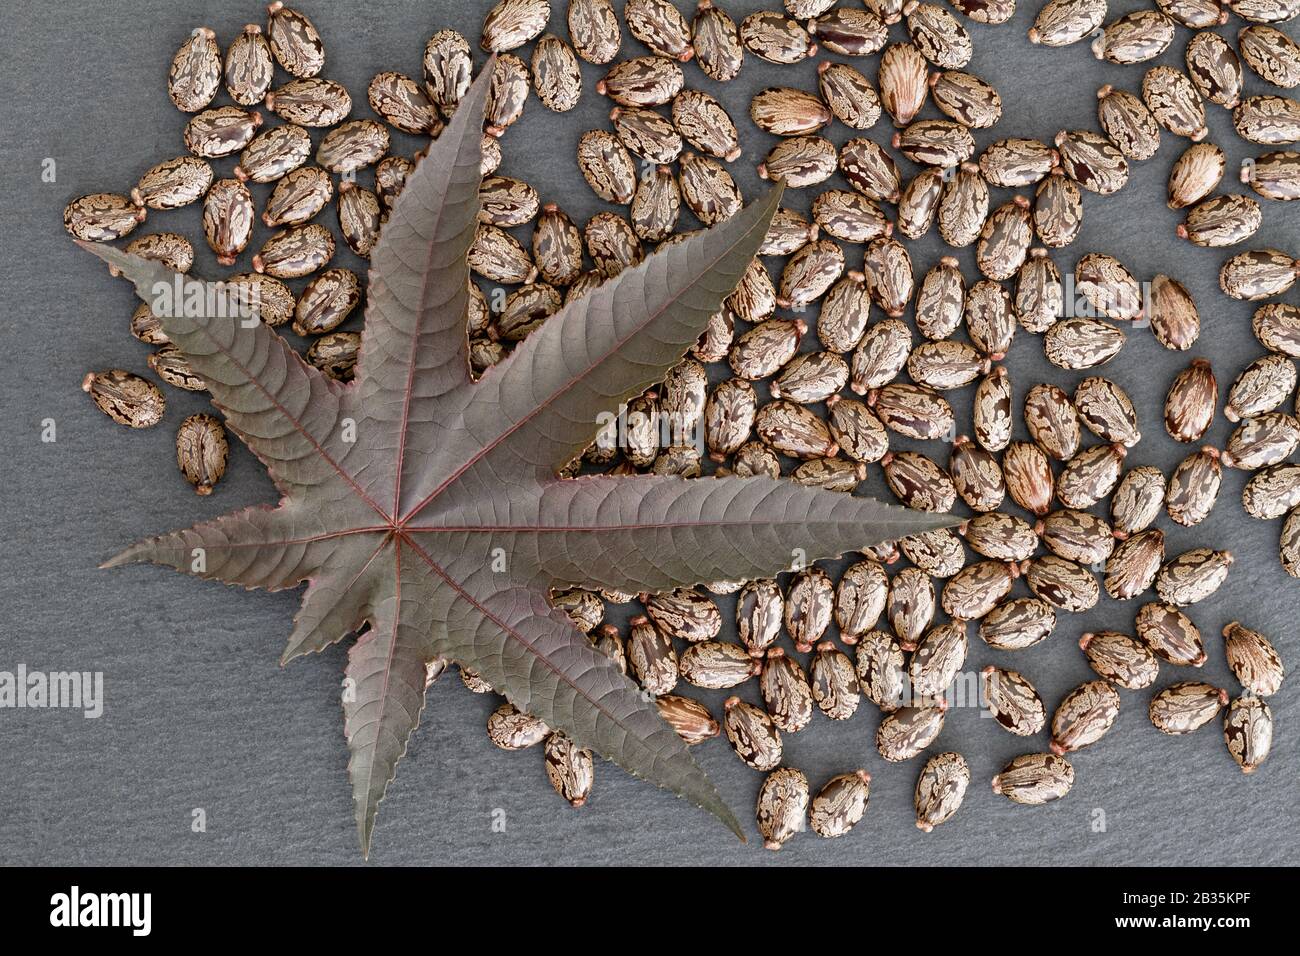 Fagiolo di ricino (Ricinus communis) - foglie e semi: Concetto di natura con una foglia e semi serverali di ricino (ricinus communis) a bordo di ardesia Foto Stock